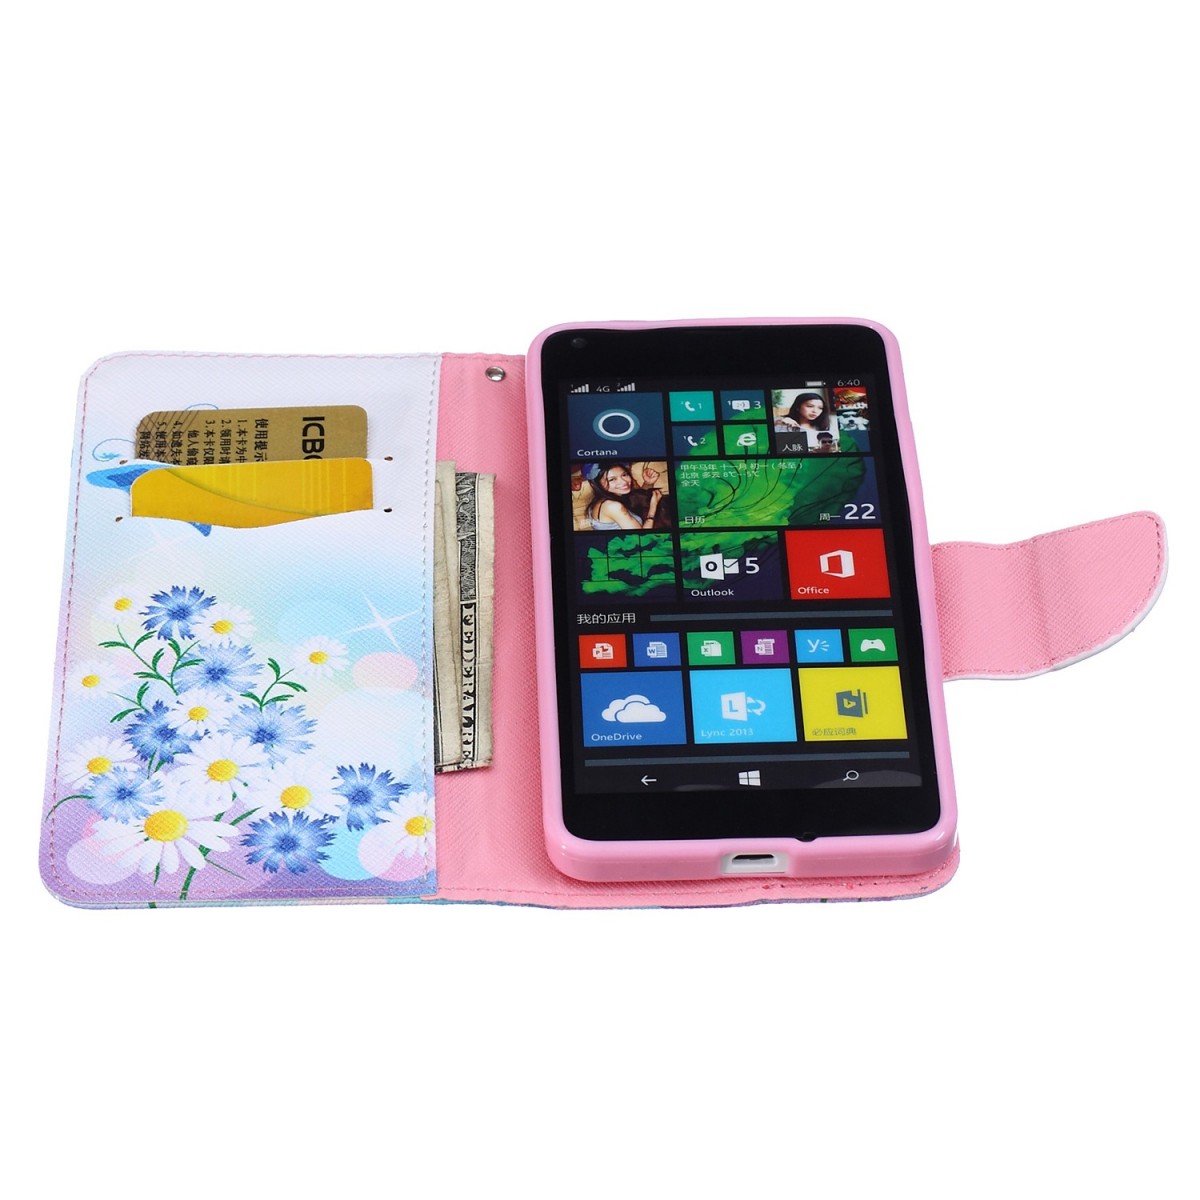 Etui Microsoft Lumia 640 motif Bouquet de Fleurs et Papillon Bleu - Crazy Kase